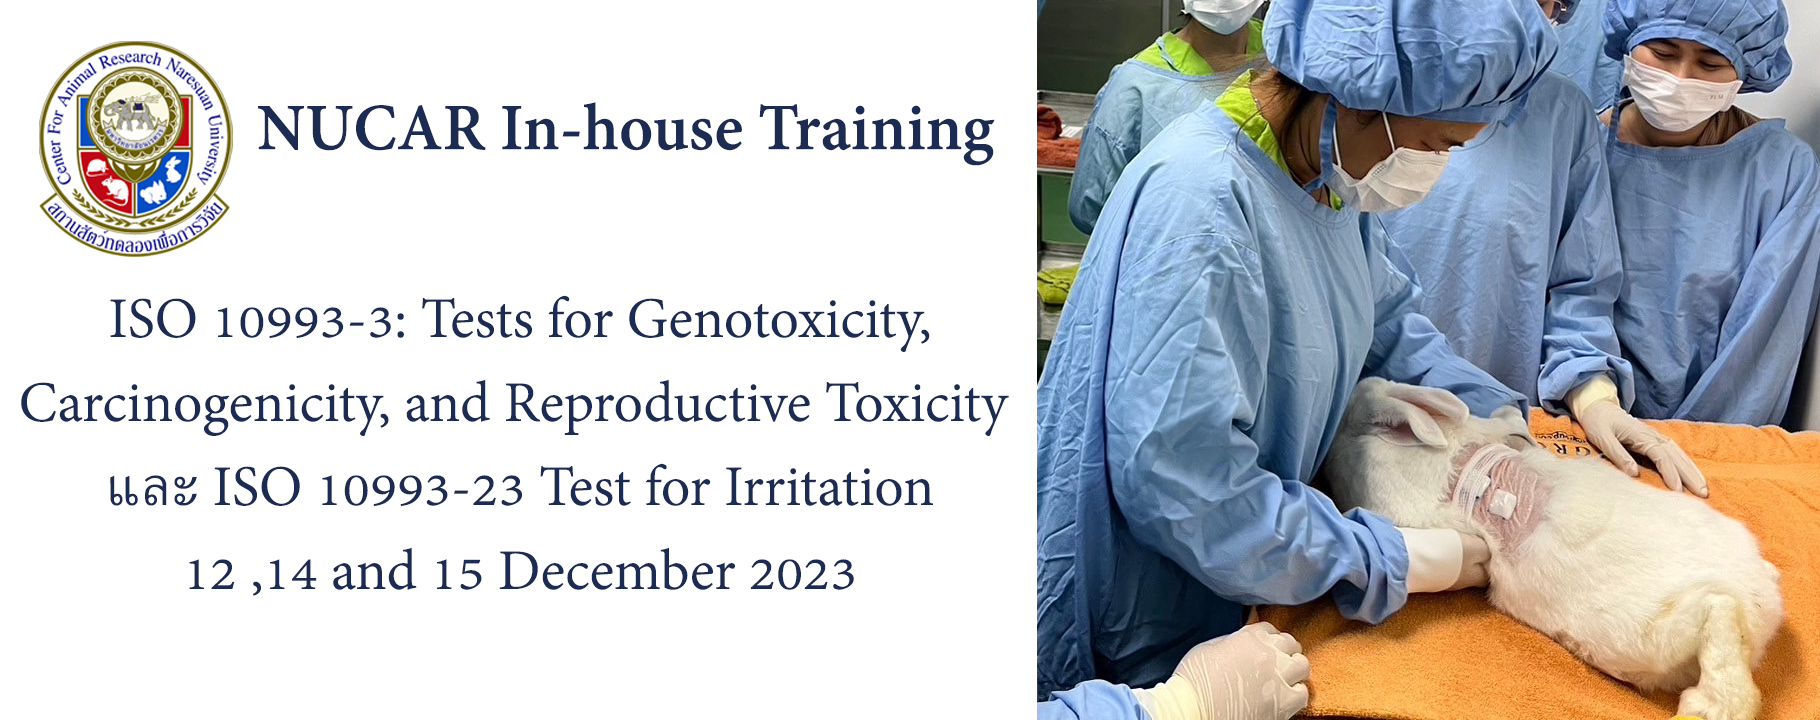 การจัดอบรม In-house Training ในหัวข้อ ISO 10993-3: Tests for Genotoxicity, Carcinogenicity, and Reproductive Toxicity และ ISO 10993-23 Test for Irritation